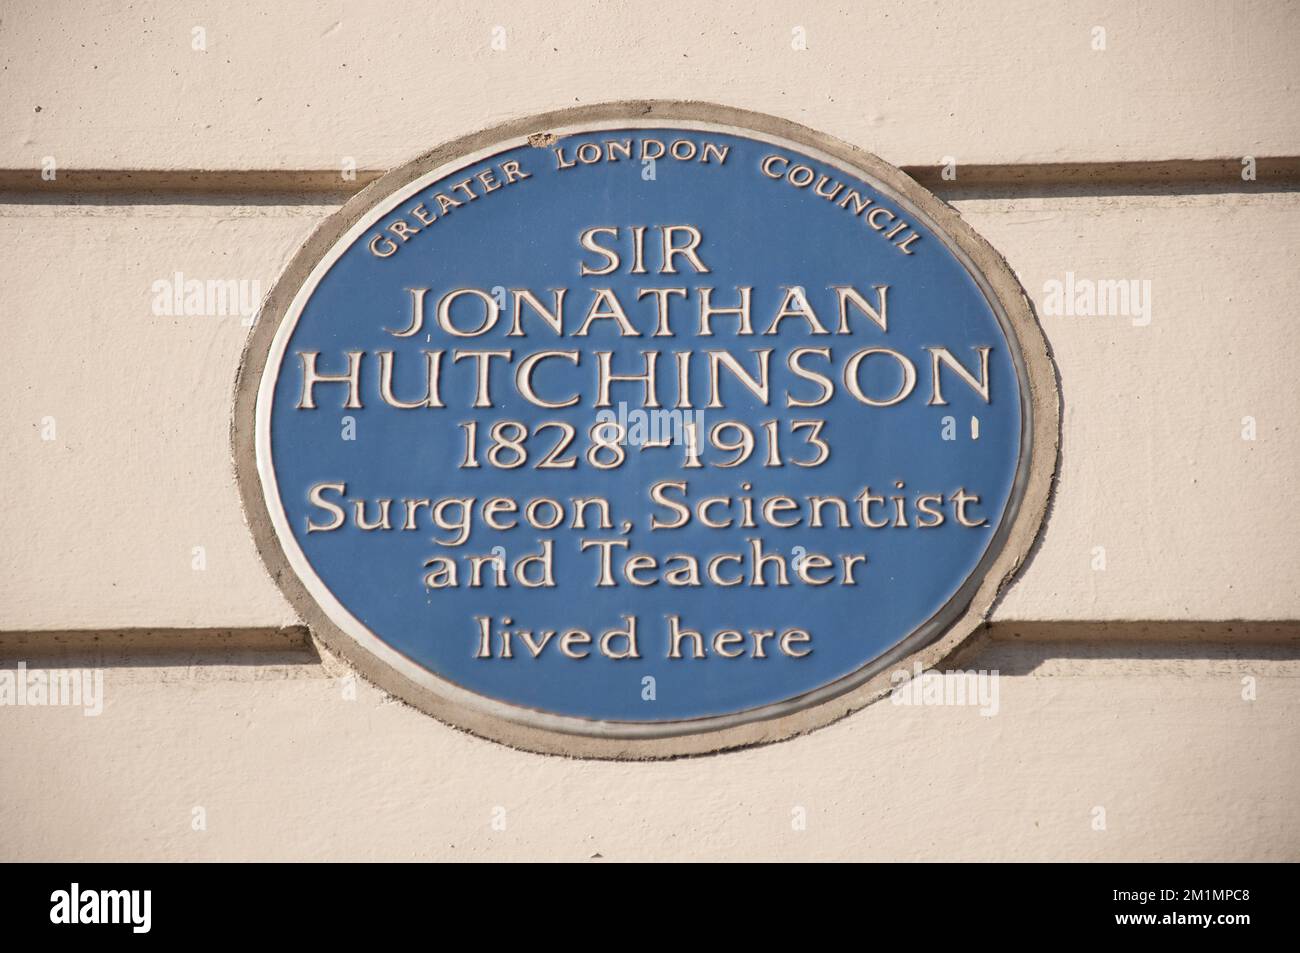 Targa commemorativa di Sir Jonathan Hutchinson, Cavendish Square, Marylebone, Londra, Regno Unito. Era chirurgo, scienziato e insegnante e visse a Cavendis Foto Stock